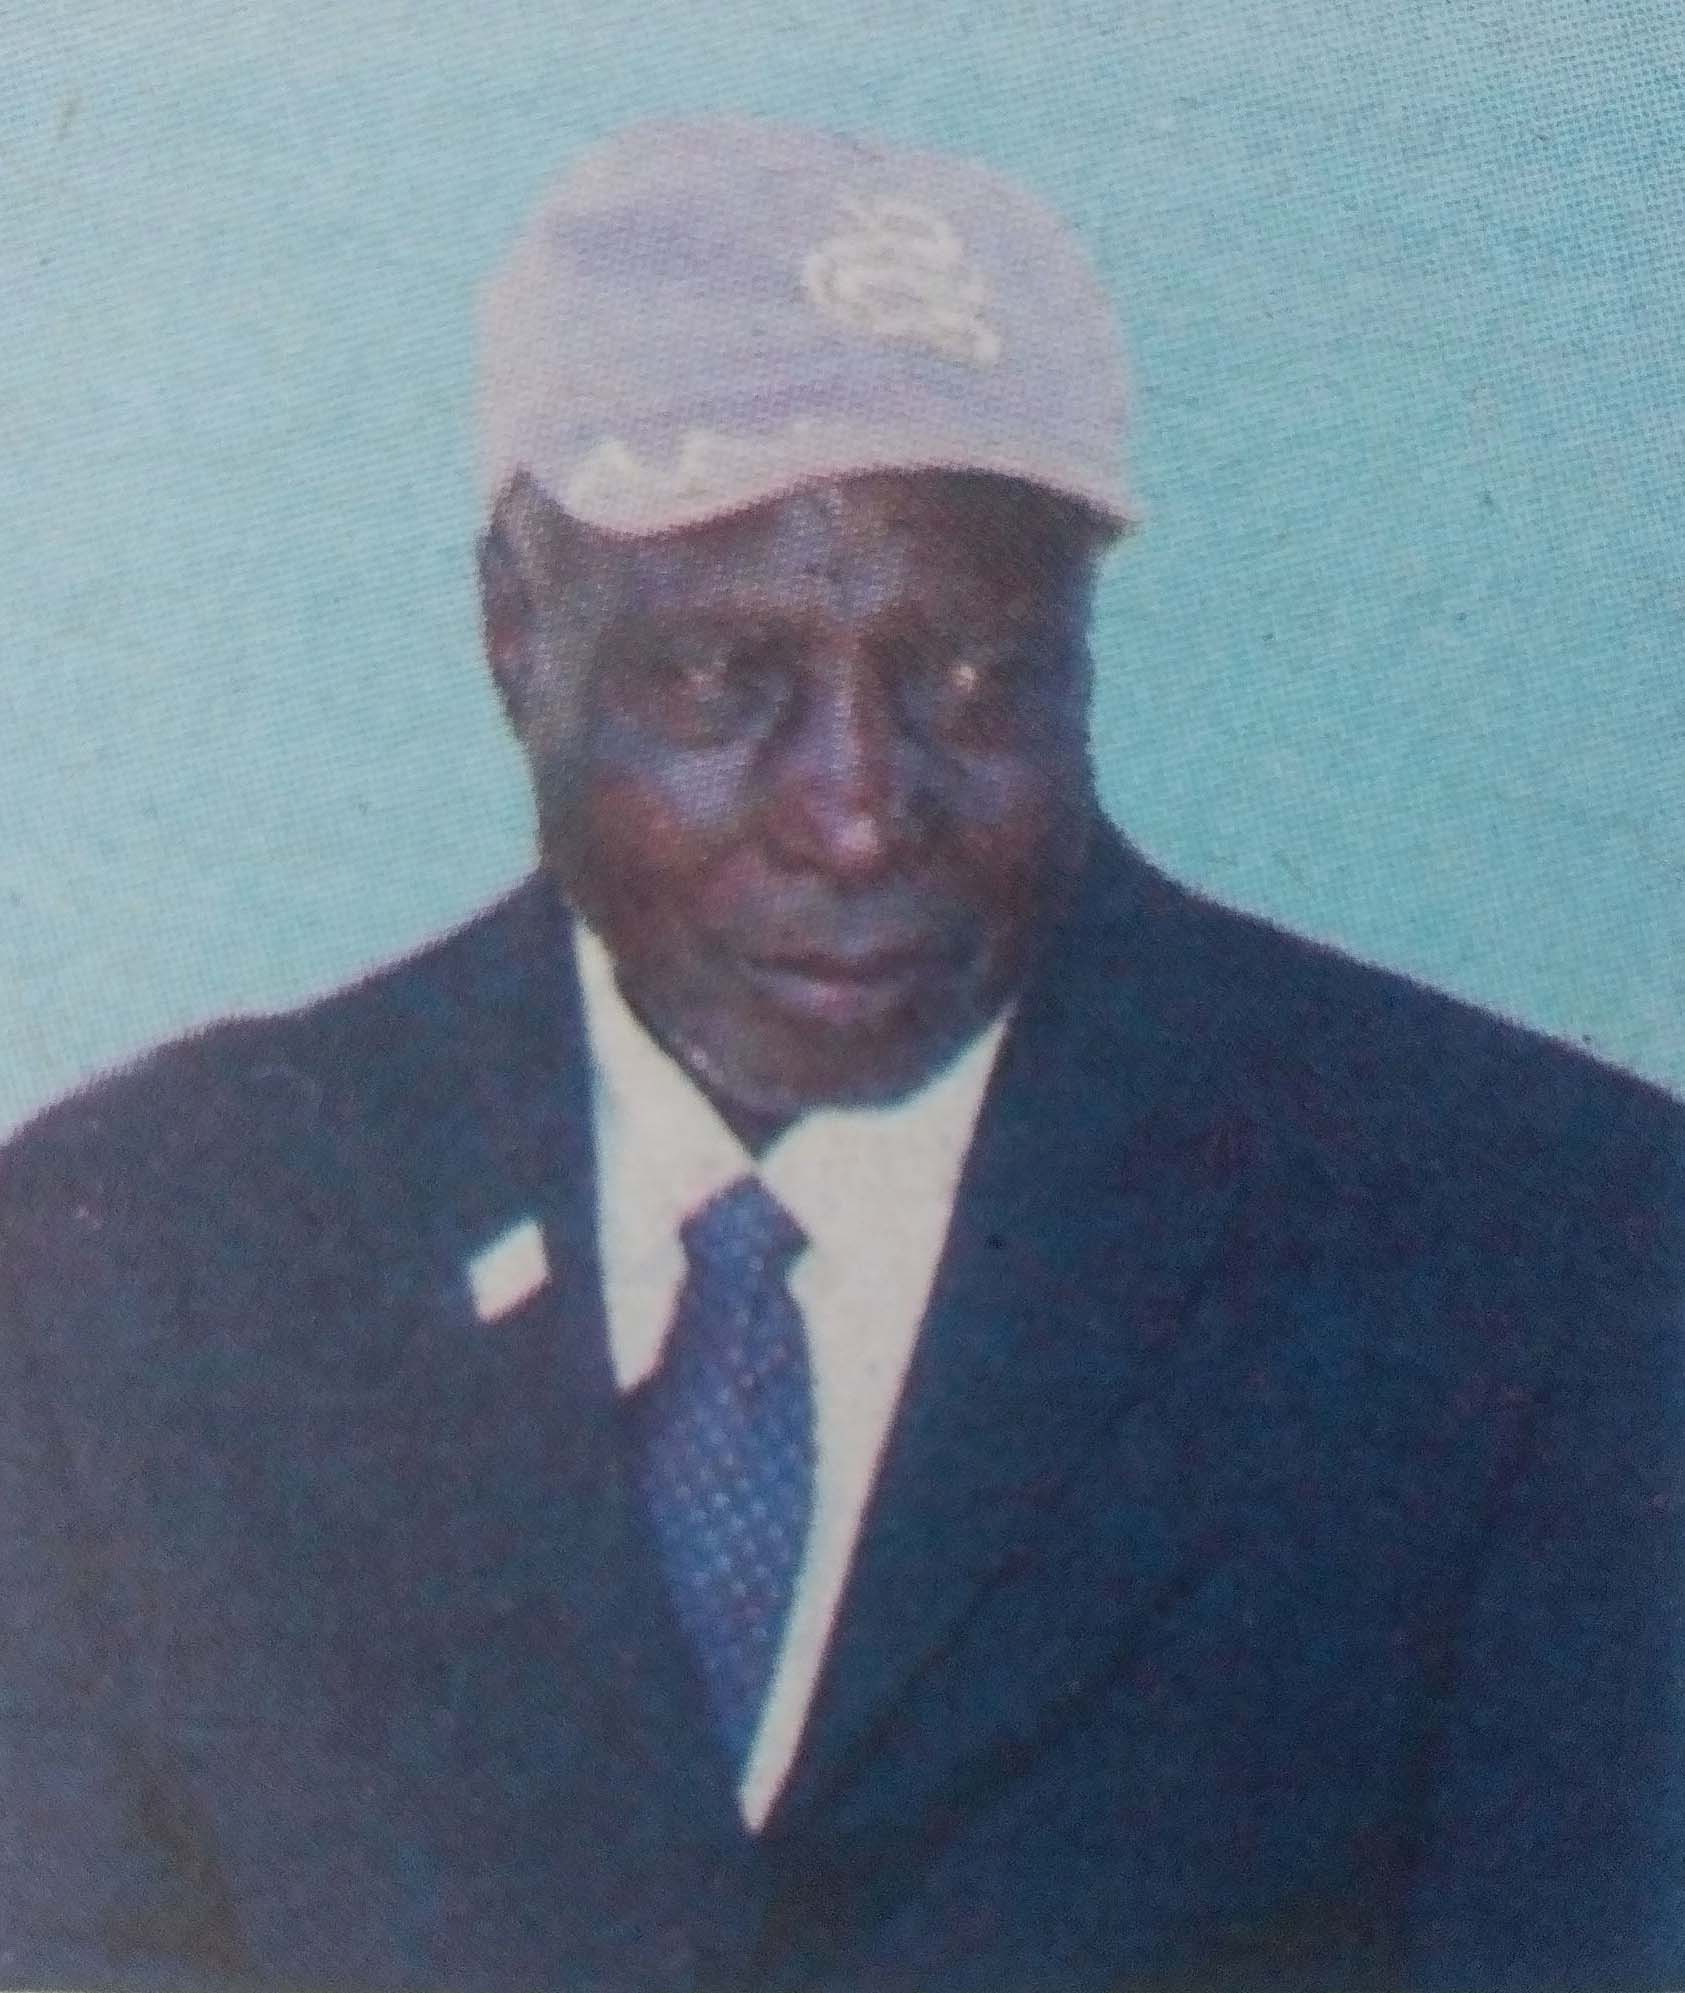 Obituary Image of Kipkereng Kipkoech Arap Kongato